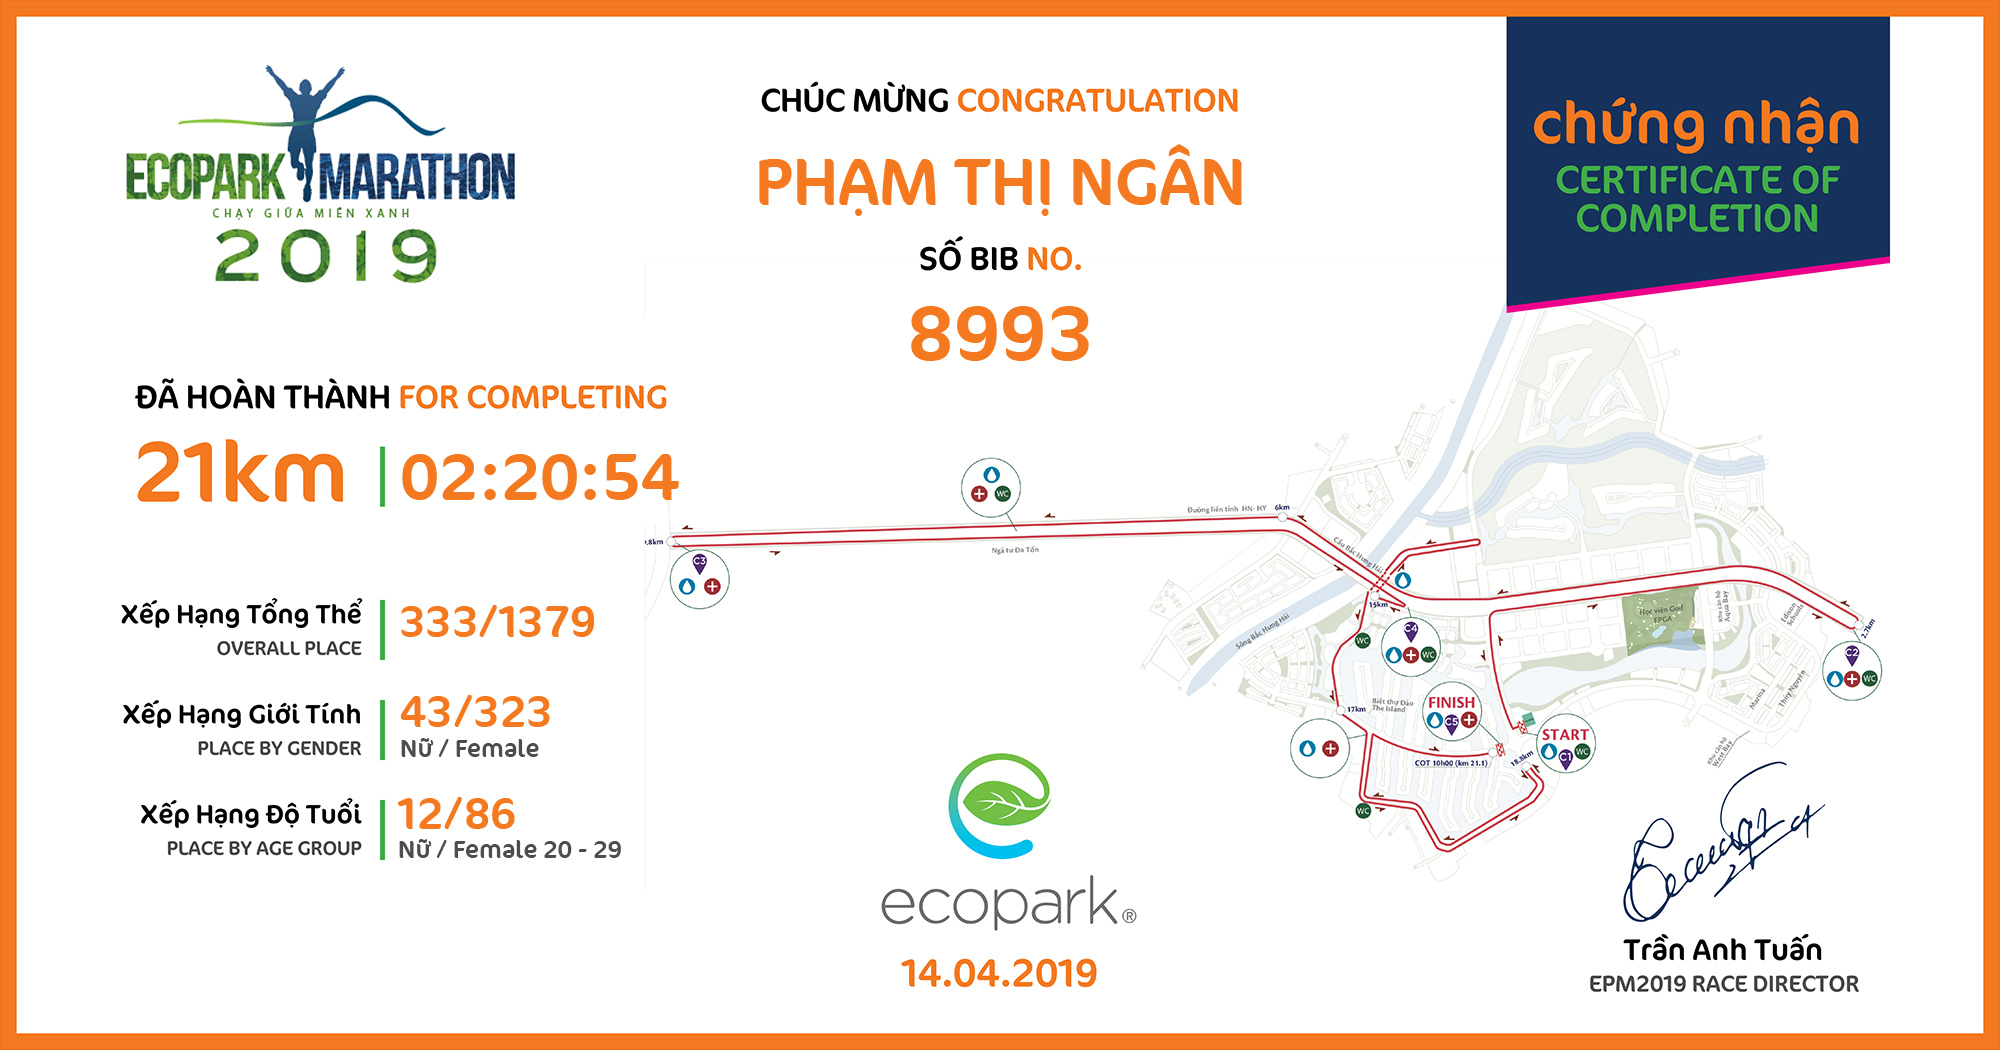 8993 - Phạm Thị Ngân